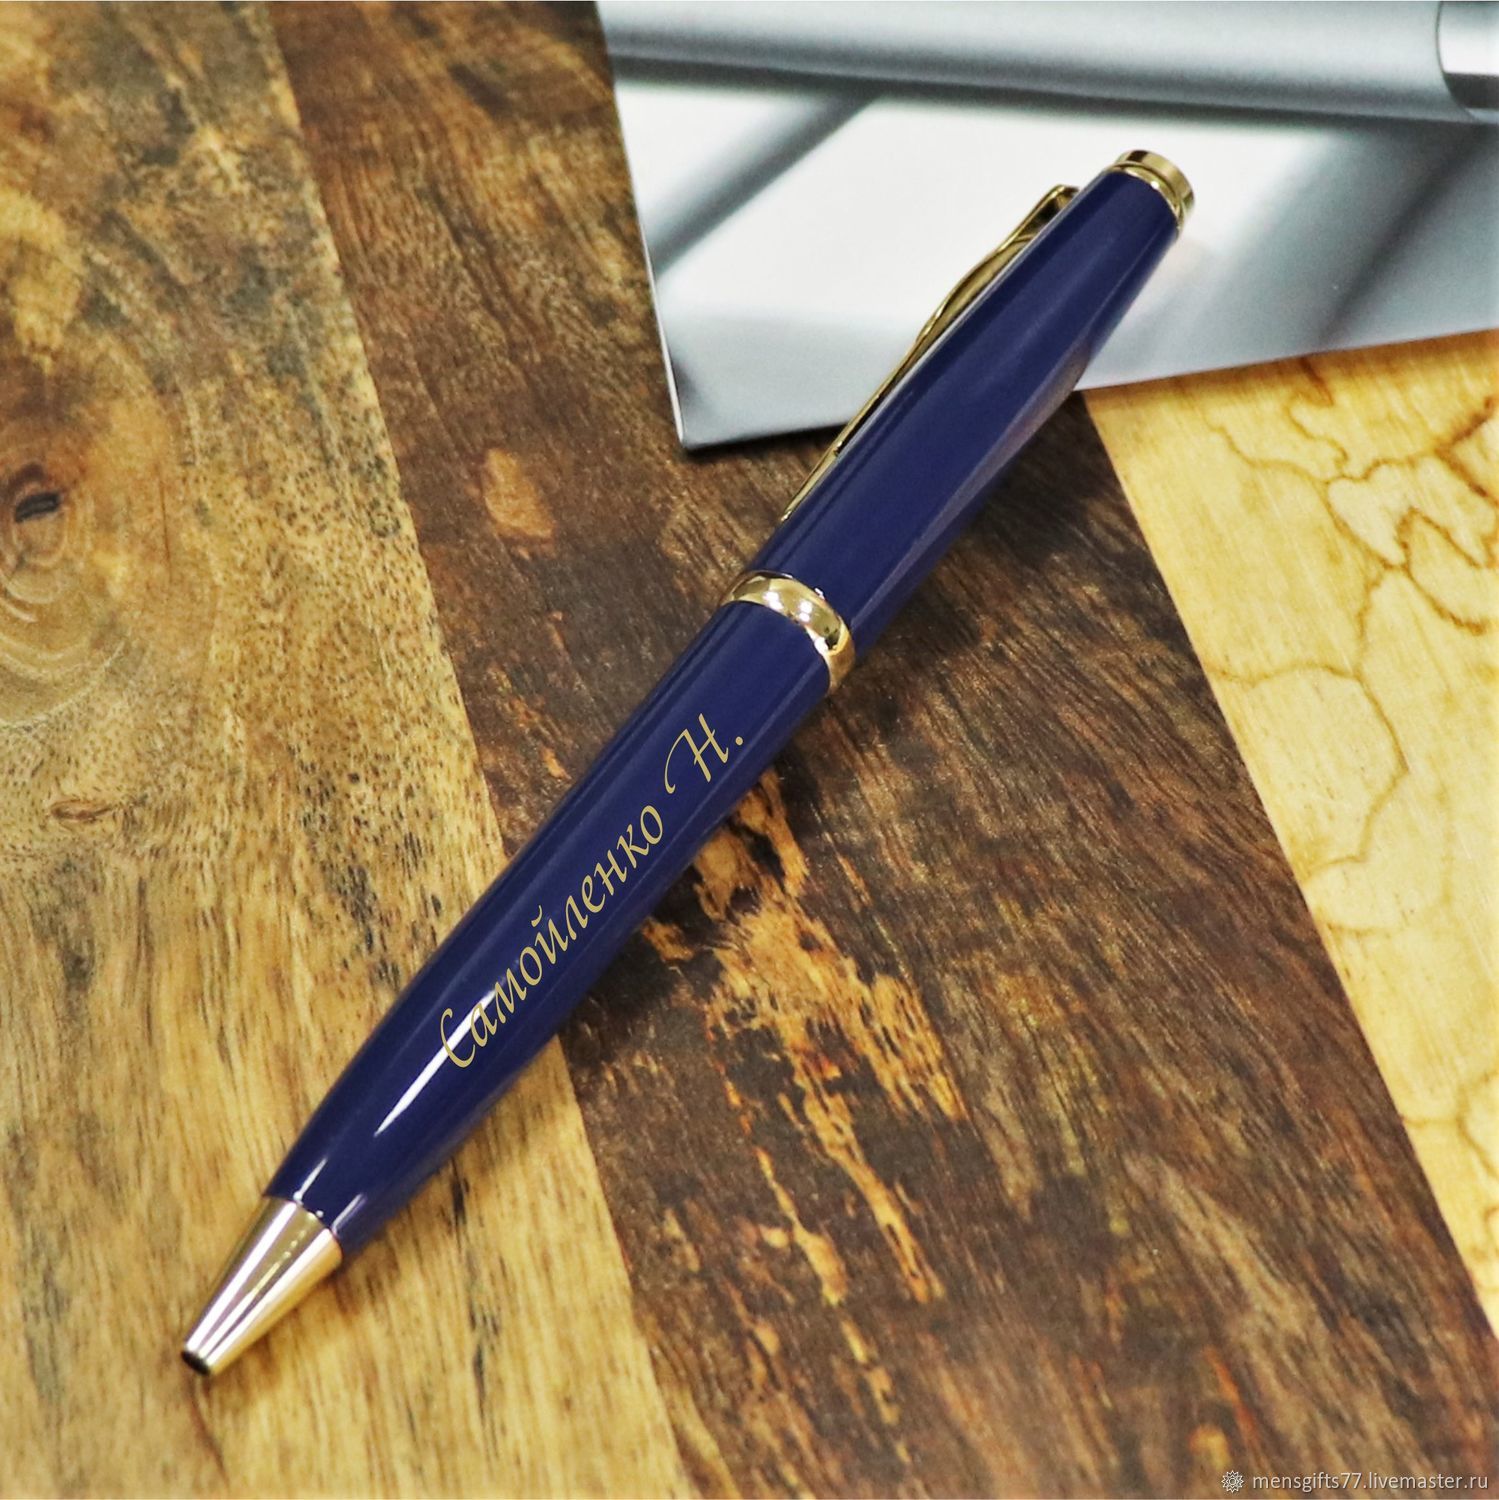 Именная ручка в подарок. Ручка Пьер Карден синяя. Ручка Пьер Карден синяя пара. Именная ручка. Именные ручки с гравировкой.